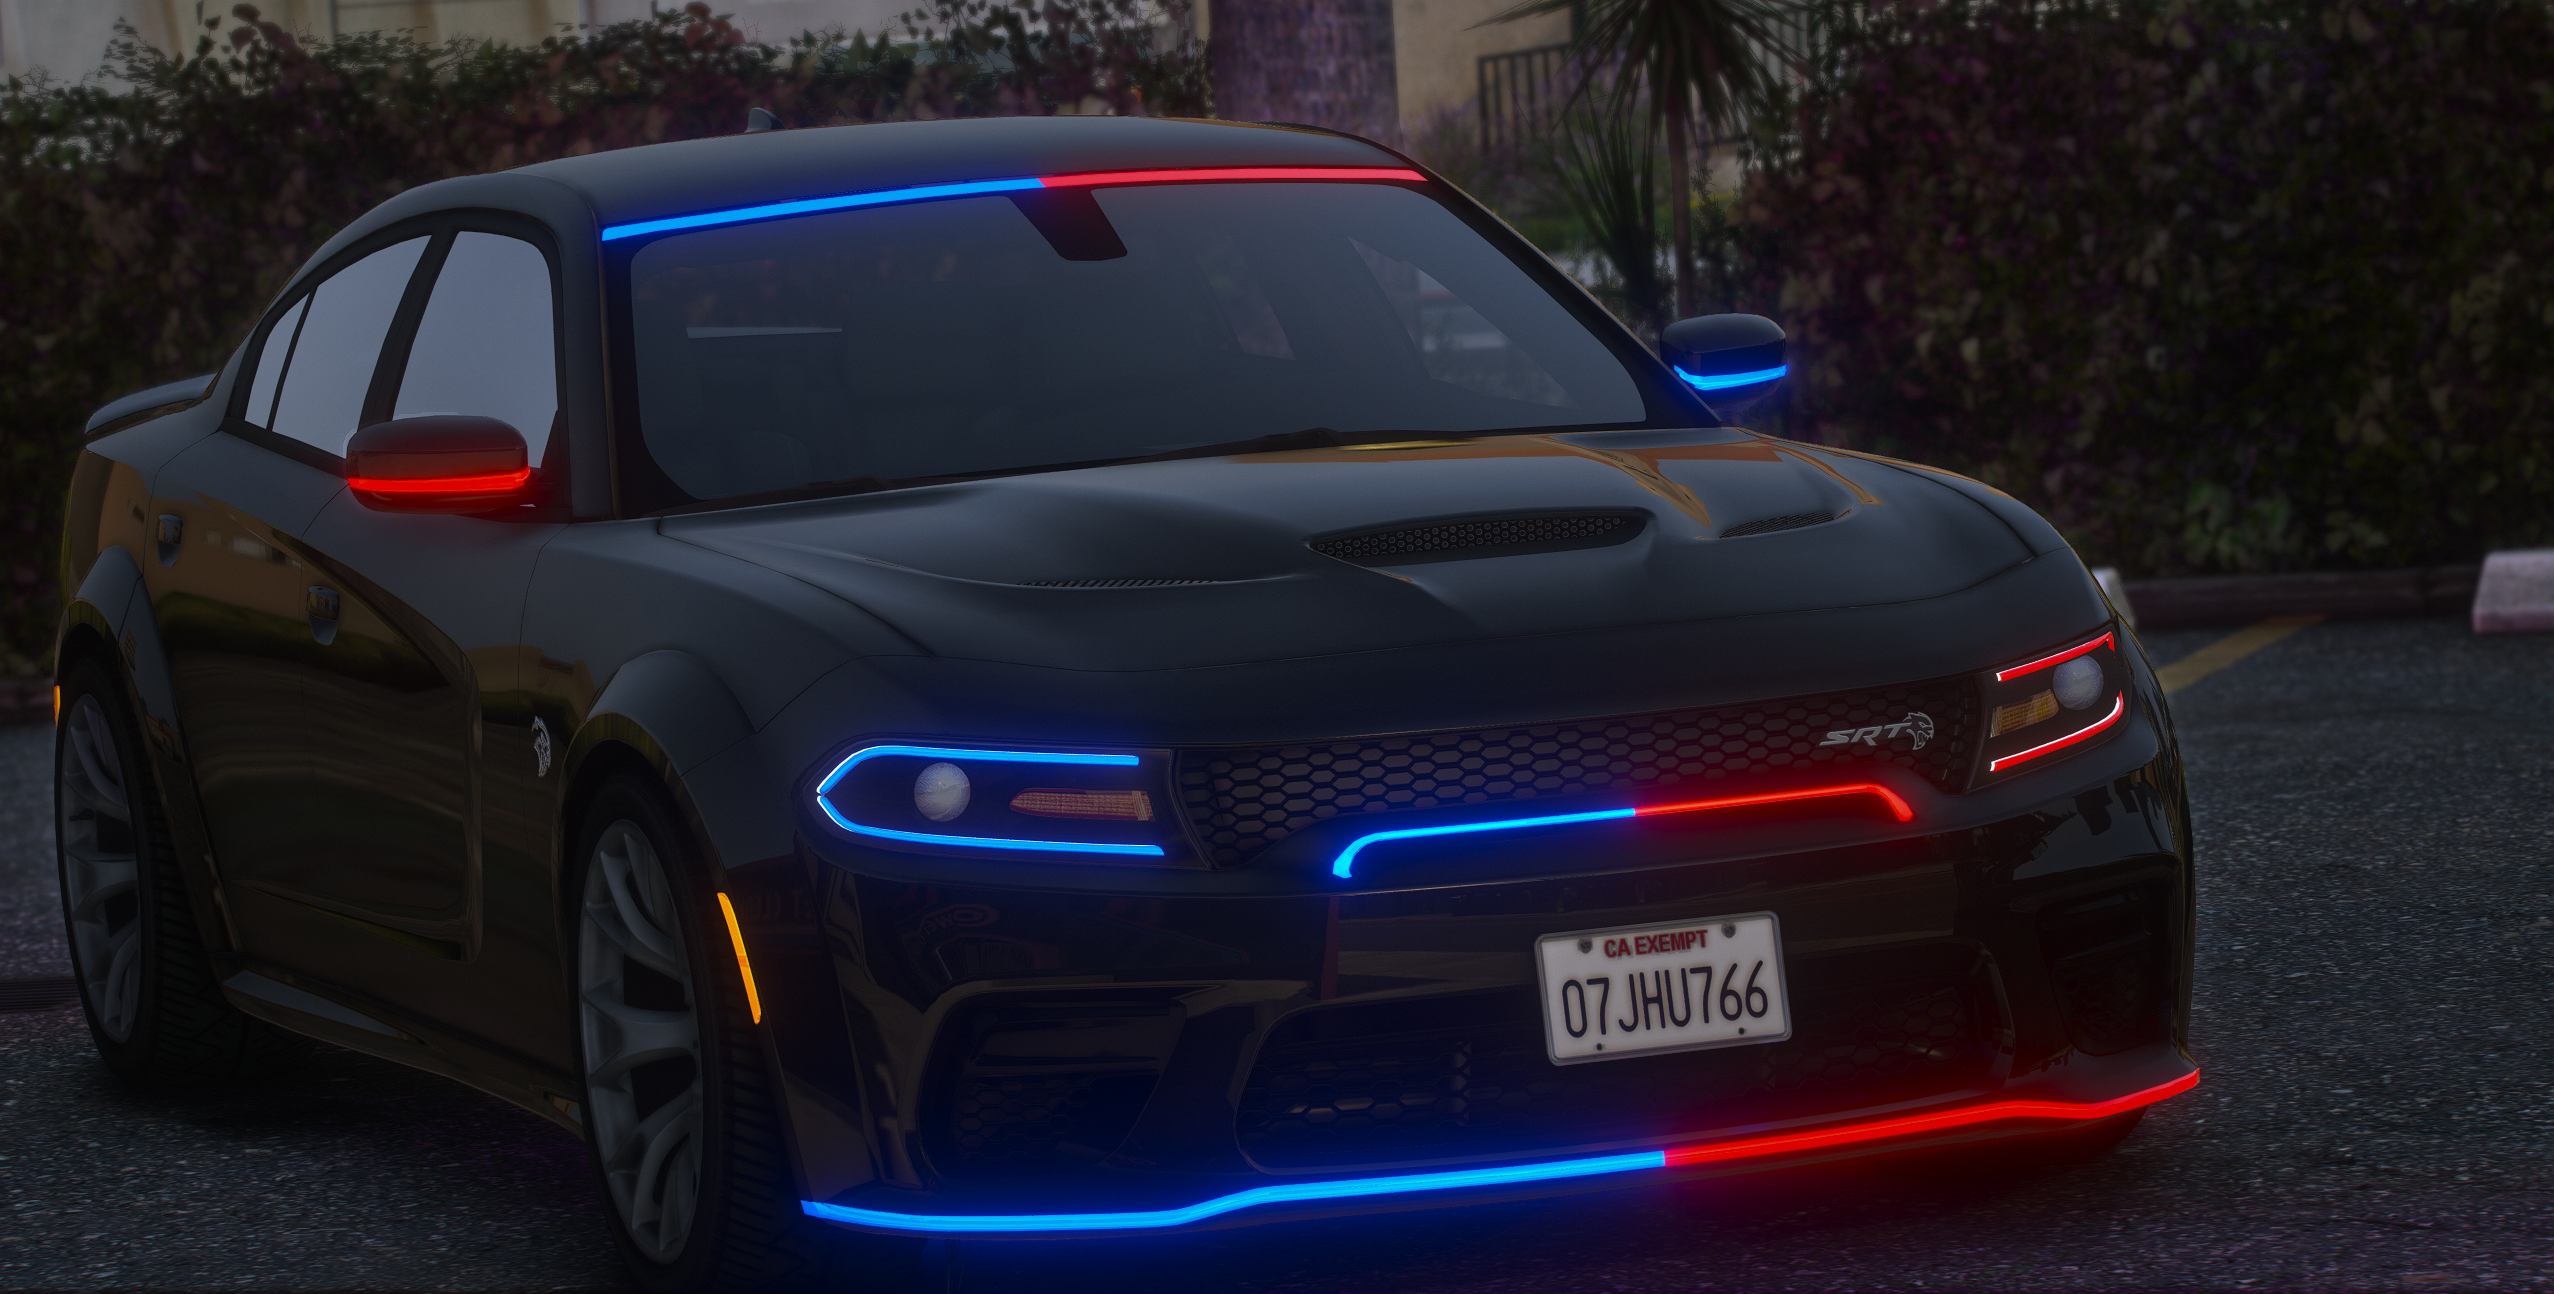 2020 Dodge Charger SRT Hellcat FiveM Police Vehicle